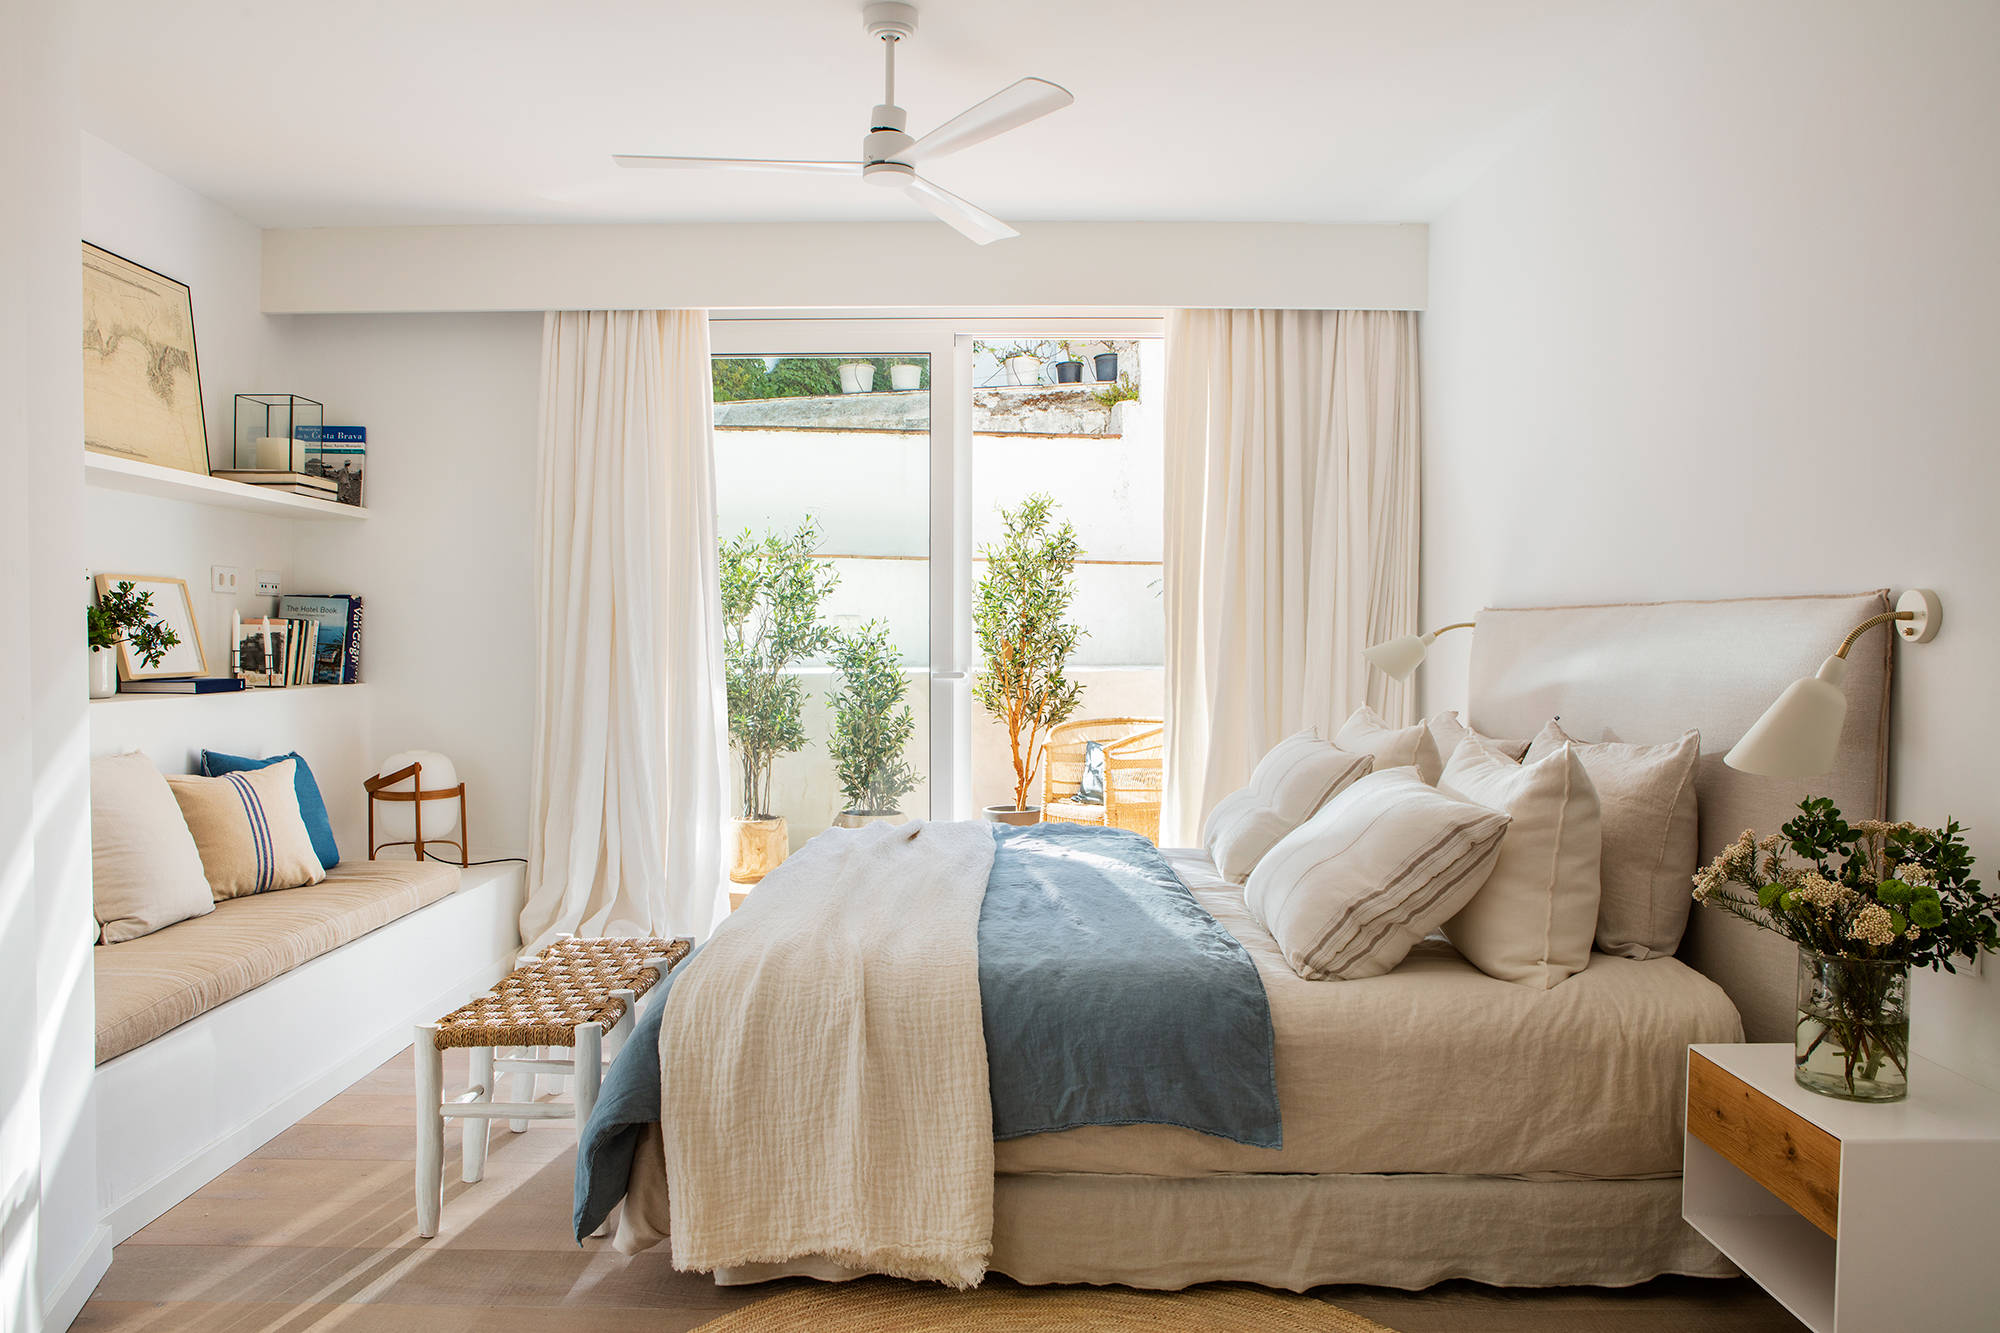 Dormitorio primaveral con base blanca, muebles a medida y ropa de cama azul.